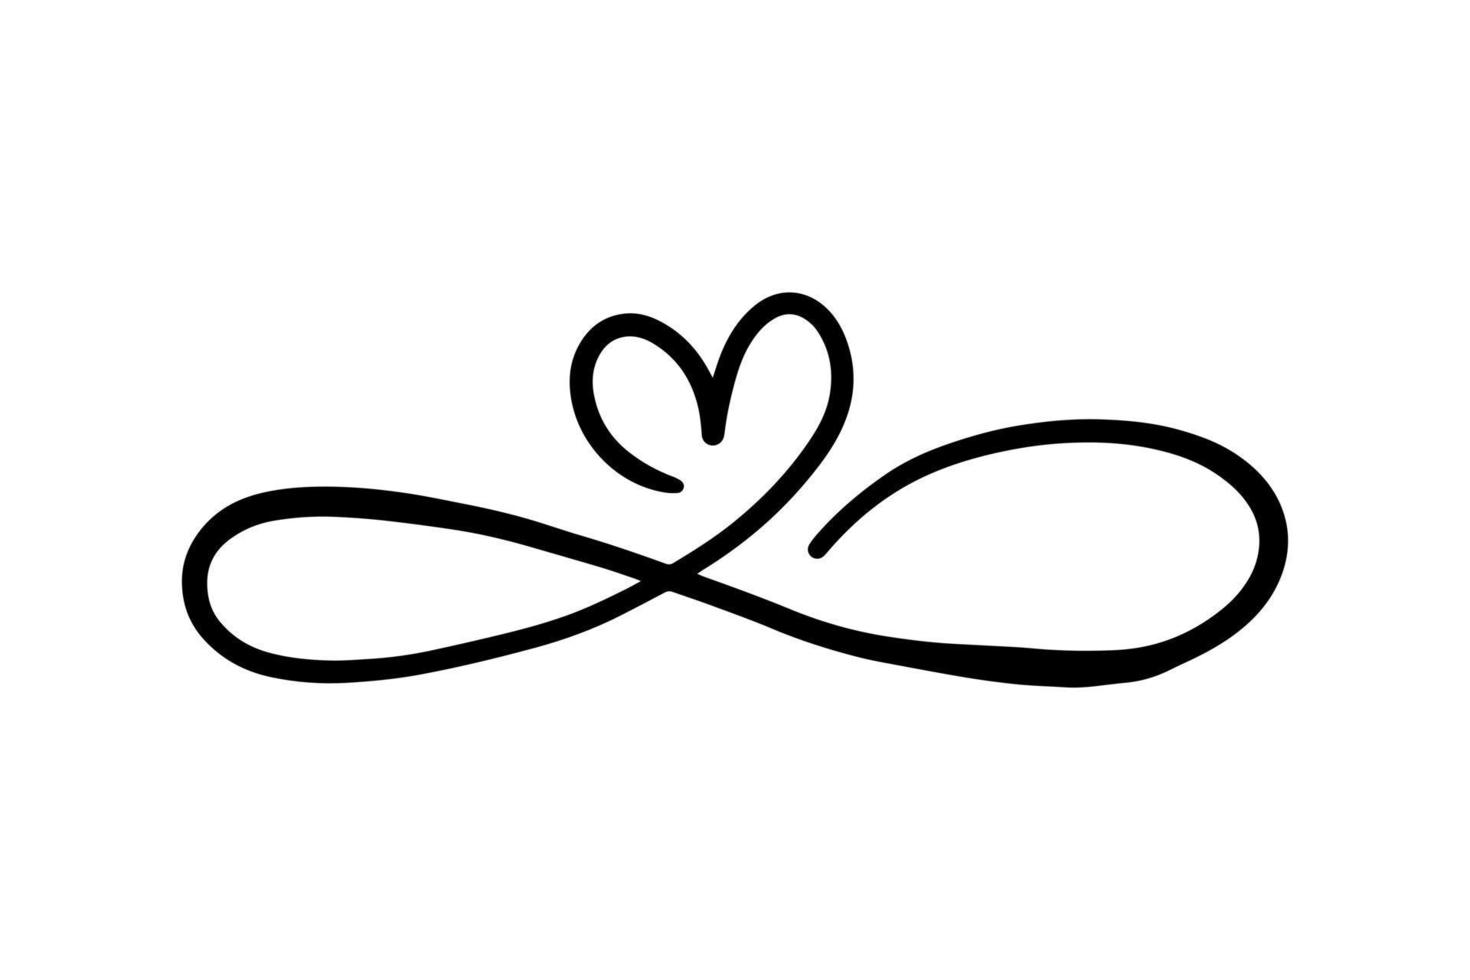 lijnen dat het formulier een symbool van liefde. vector illustratie